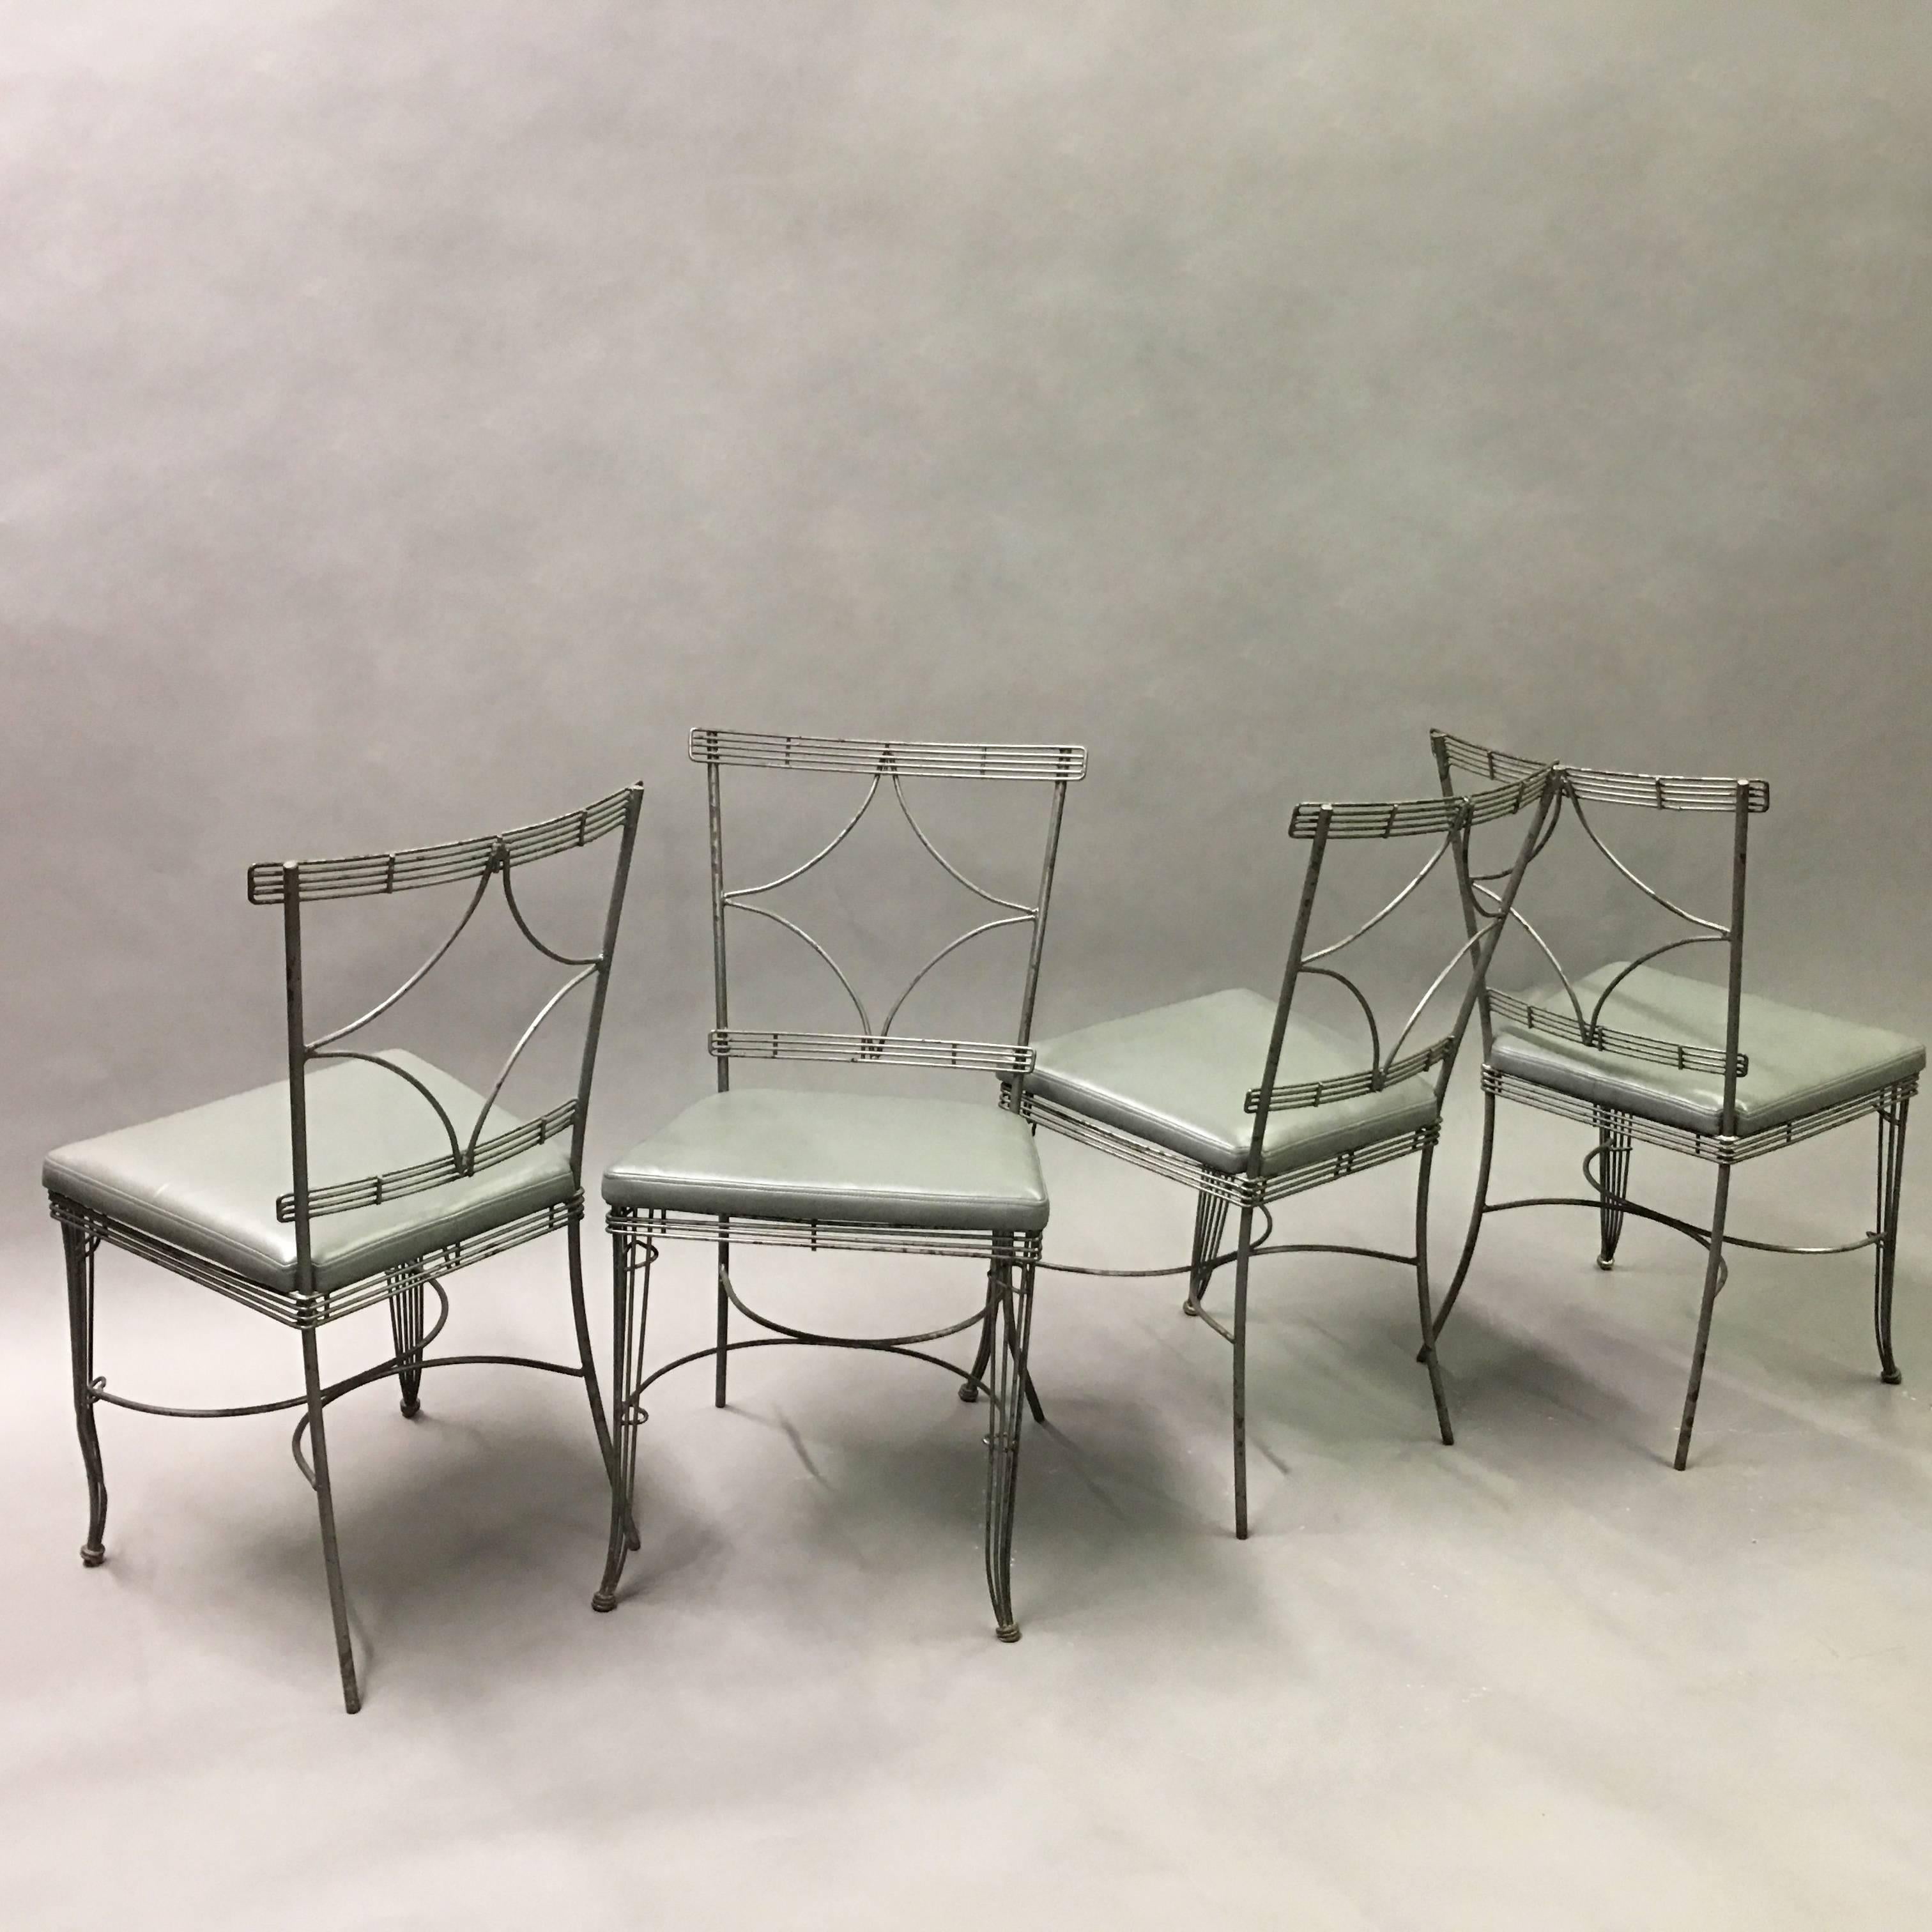 Merveilleux ensemble de quatre chaises de salle à manger de style Hollywood Regency, datant du milieu du siècle dernier, avec une structure en fil d'acier brossé, un dossier en forme de diamant et des sièges nouvellement rembourrés en vinyle gris.